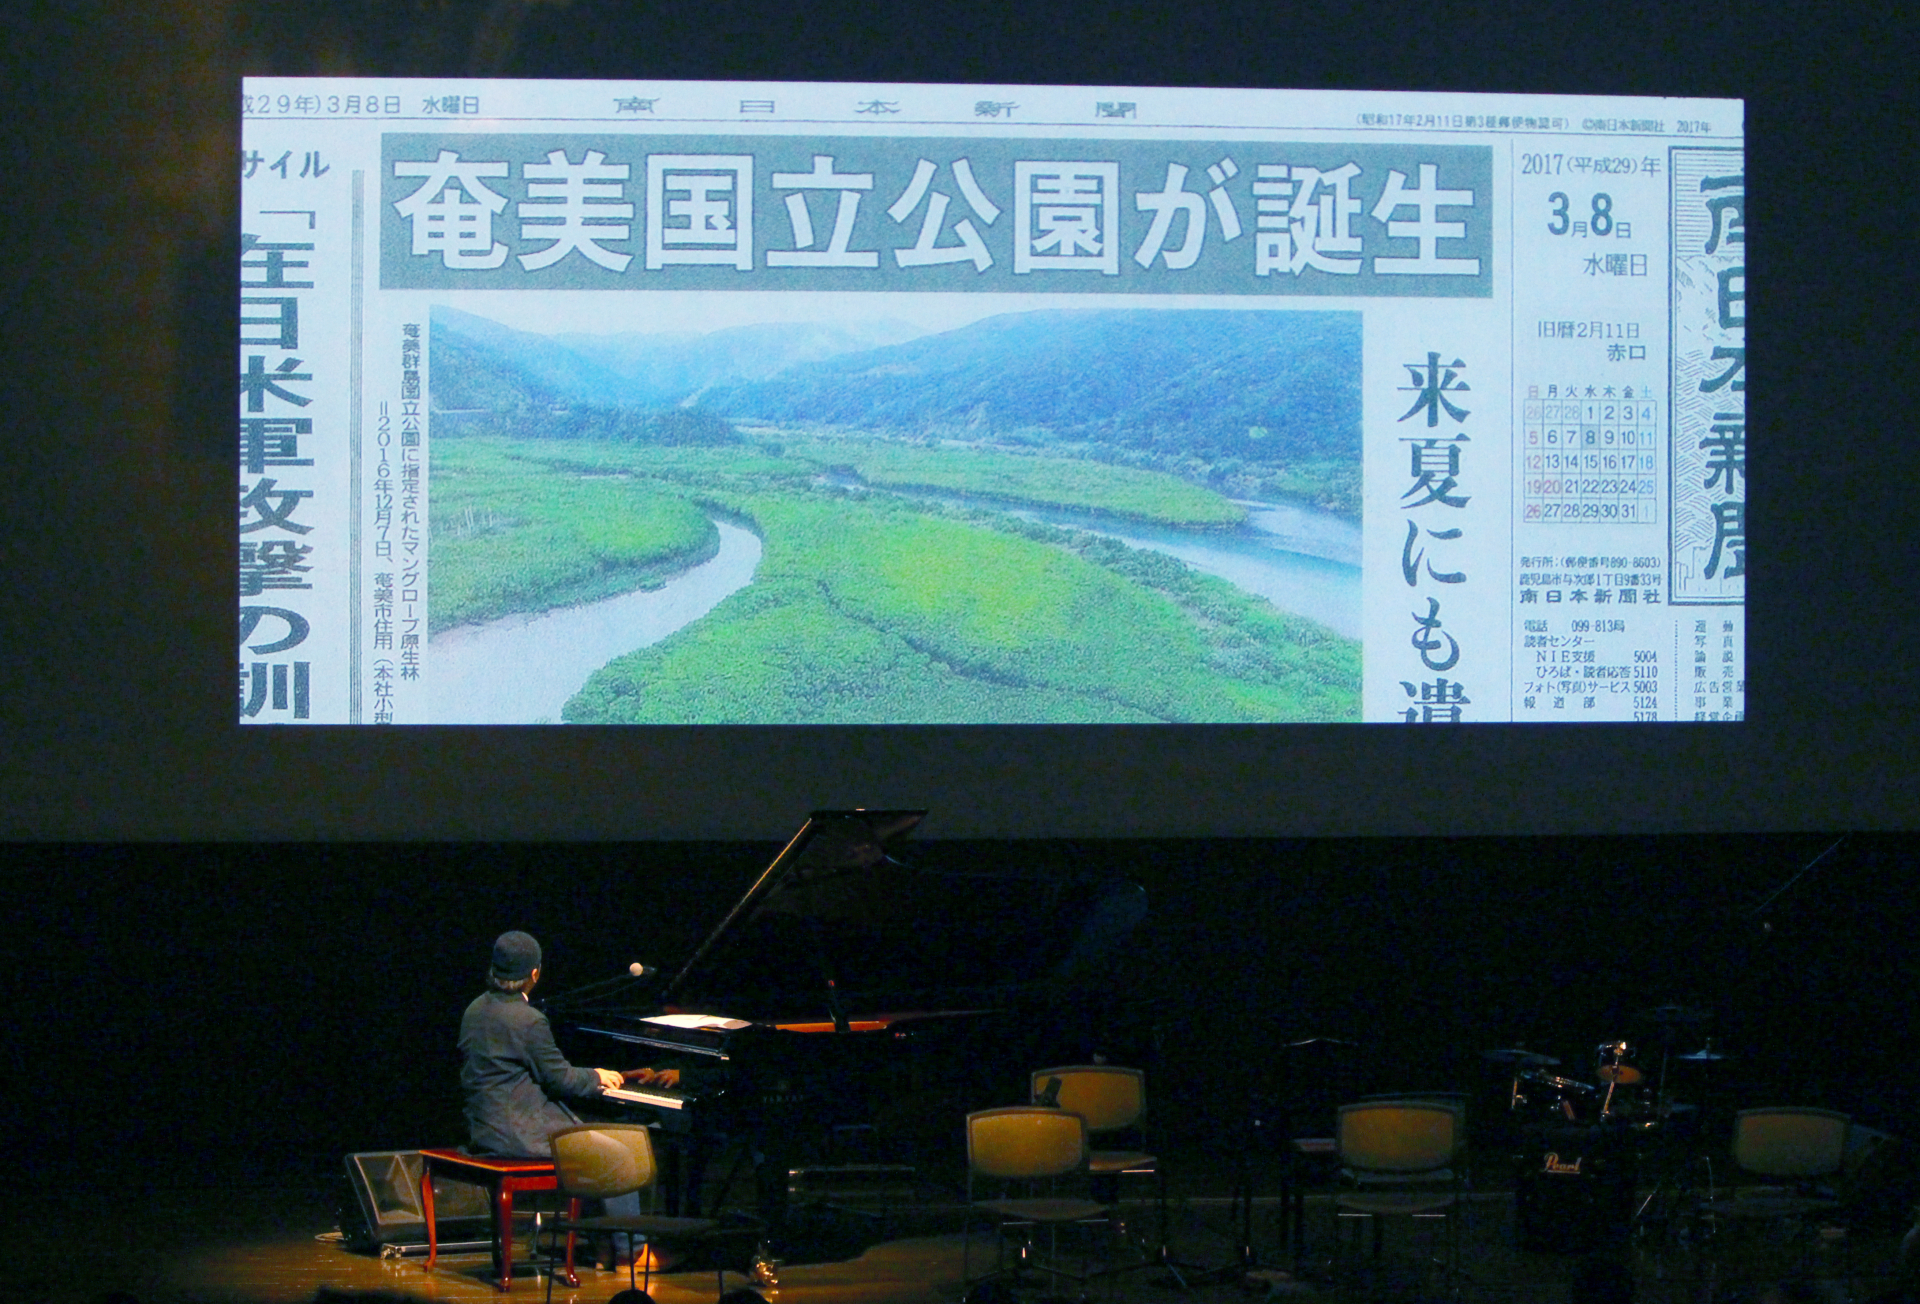 村松さんの即興演奏と環境文化映像